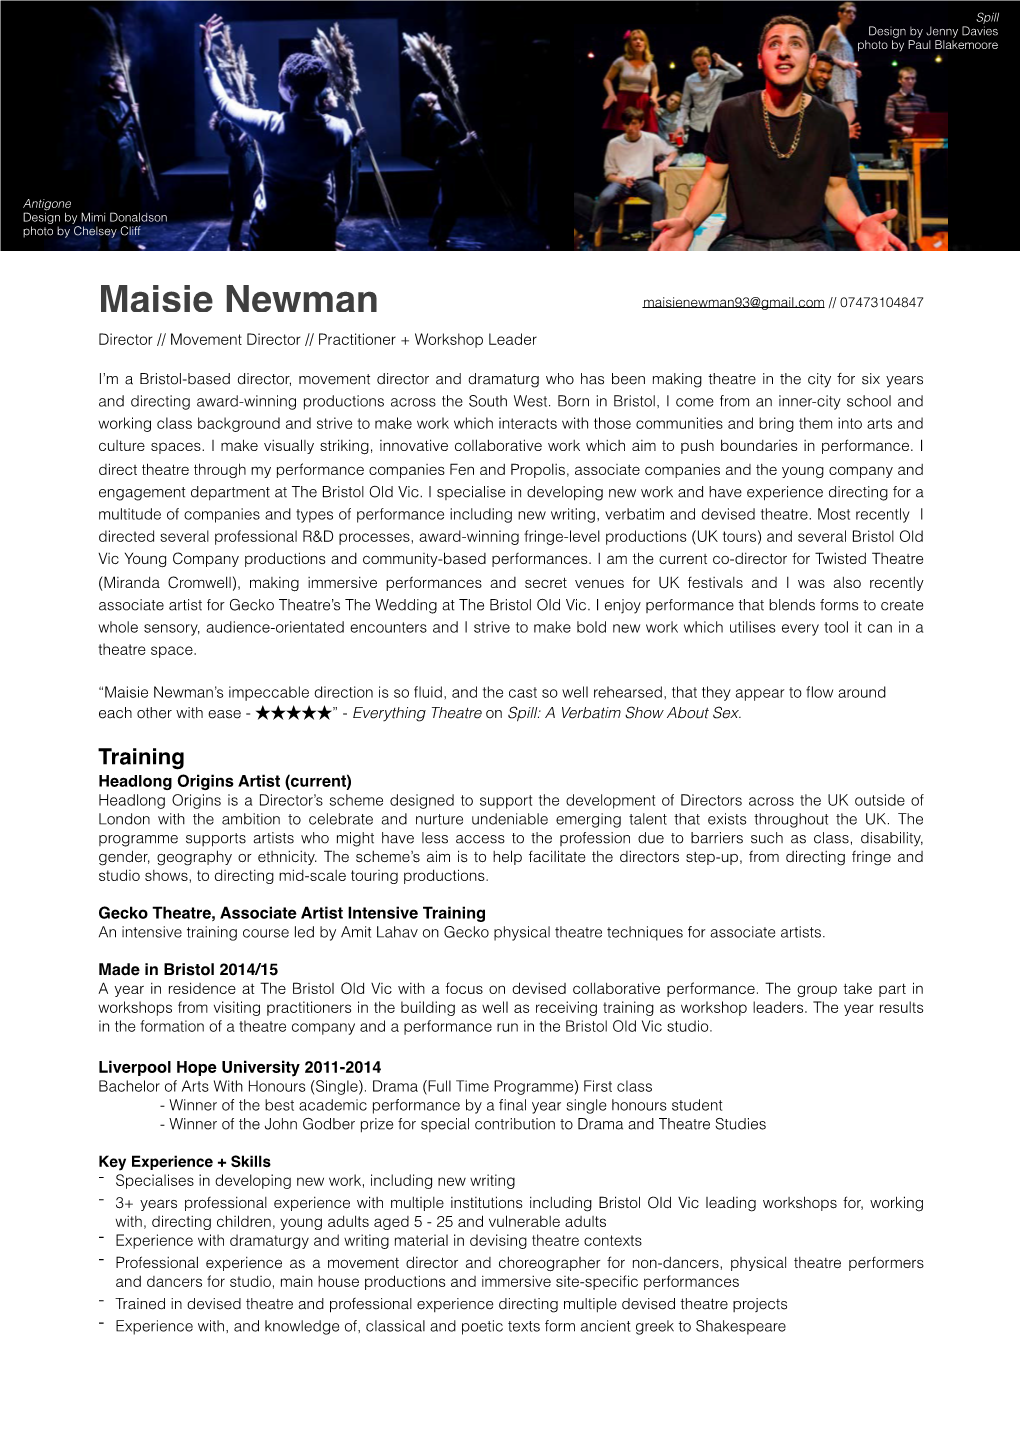 Maisie Newman Director Development Cv